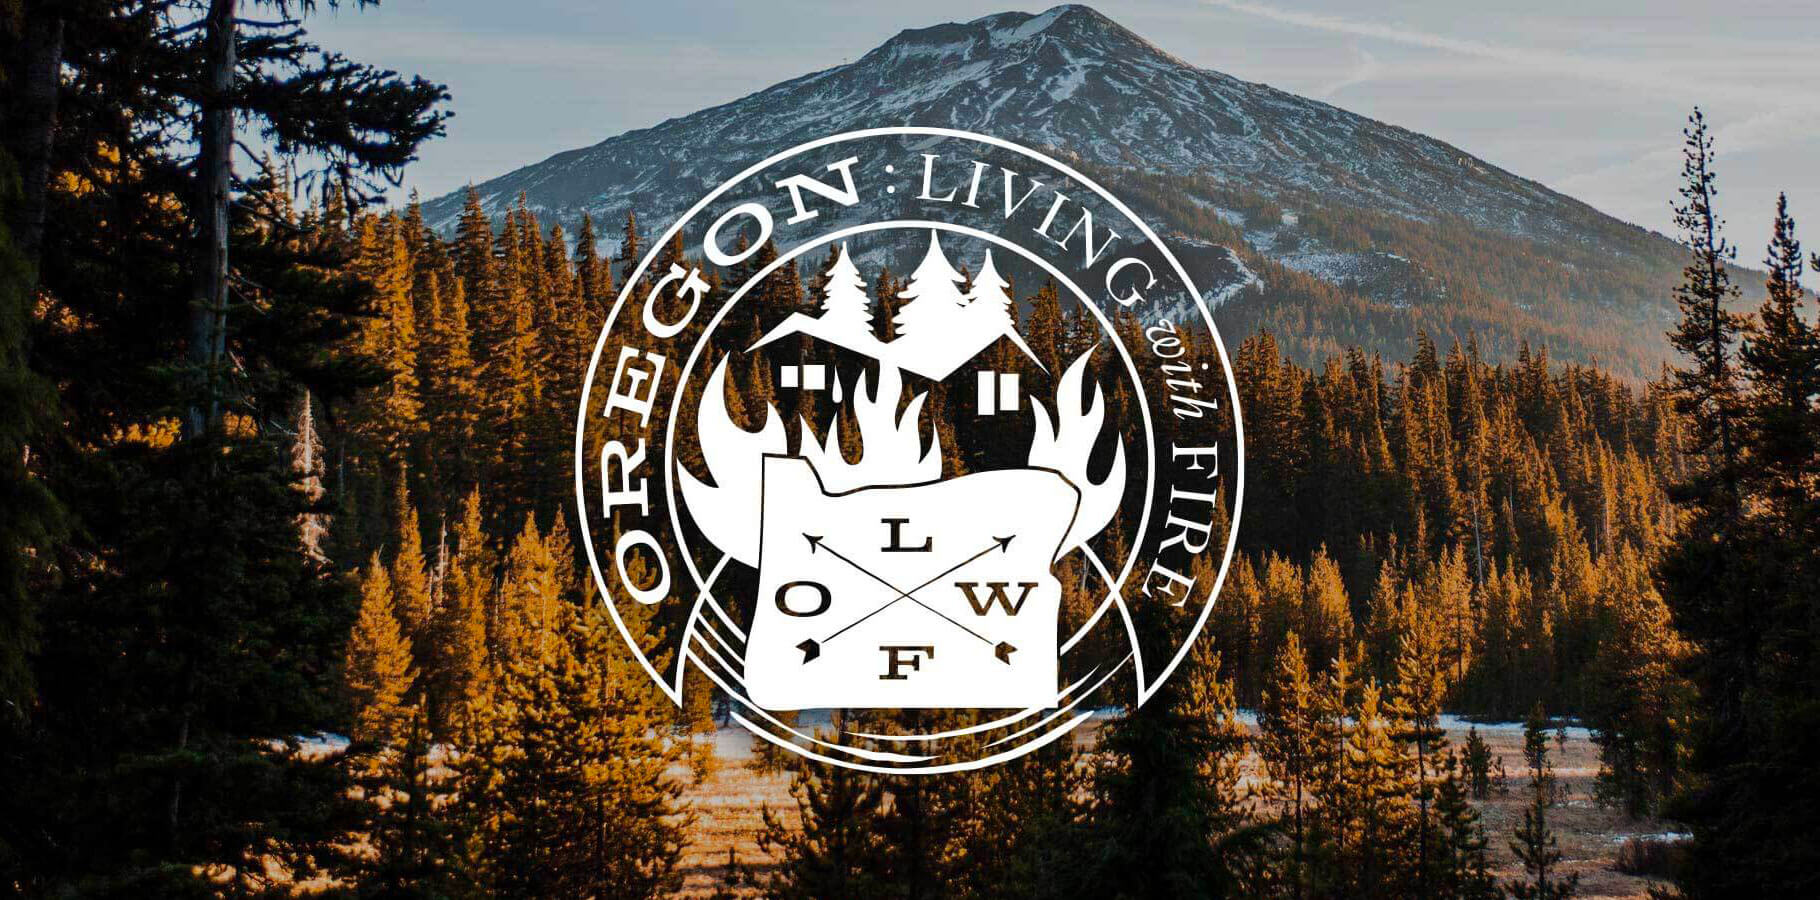 Oregon-Living-with-Fire_design-portfolio